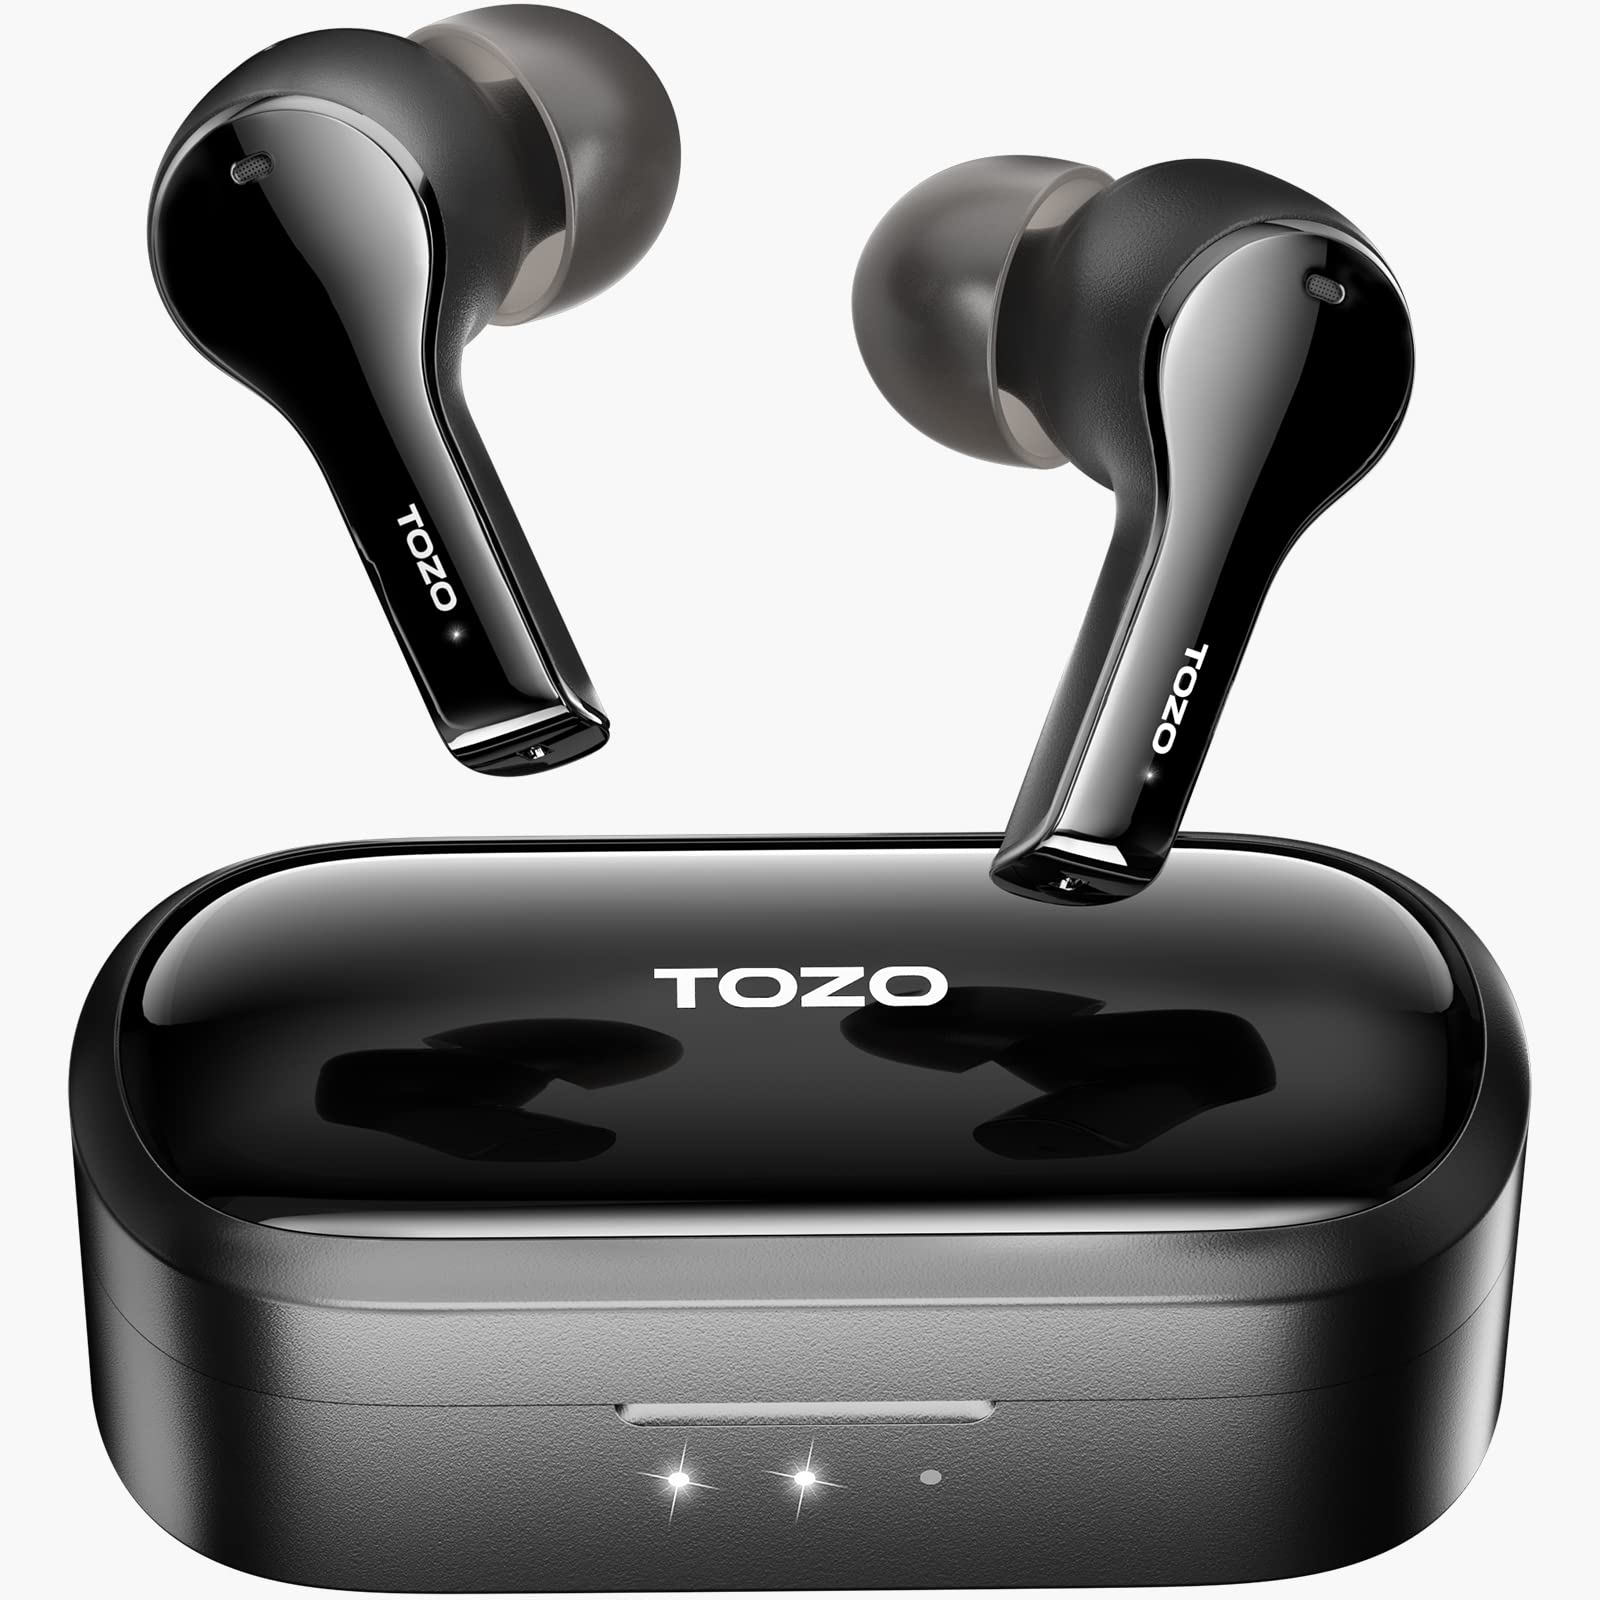 TOZO T9 真无线耳塞环保降噪 4 麦克风通话降噪耳机深重低音蓝牙 5.3 轻便无线充电盒 IPX7 防水耳机黑色